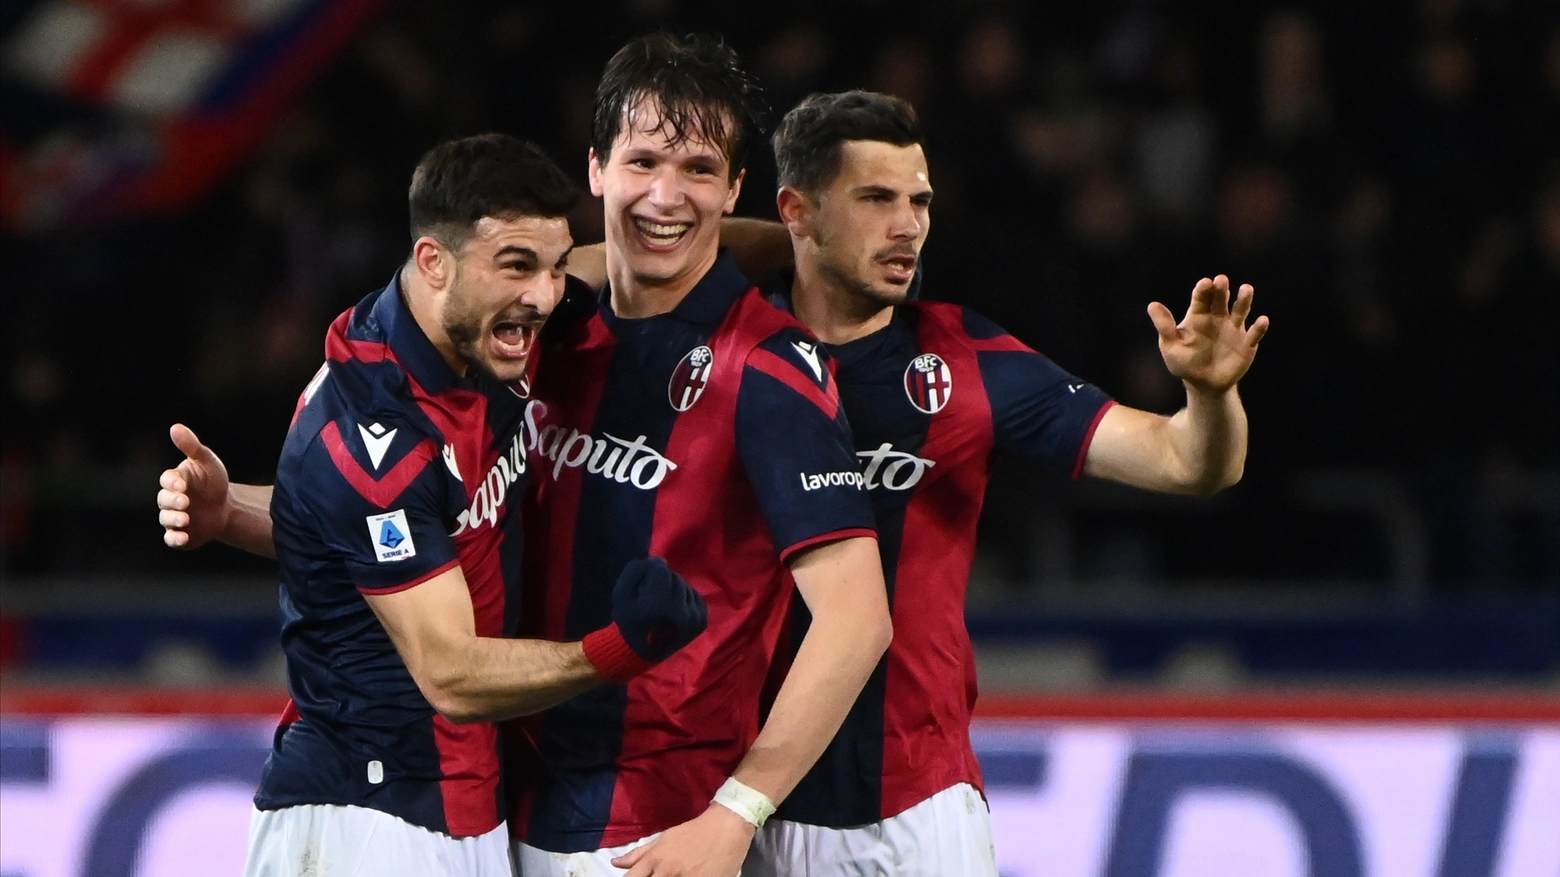 Il calendario del Bologna fino a fine stagione: ecco contro chi giocheranno i rossoblù per raggiungere il sogno Champions (FotoSchicchi)